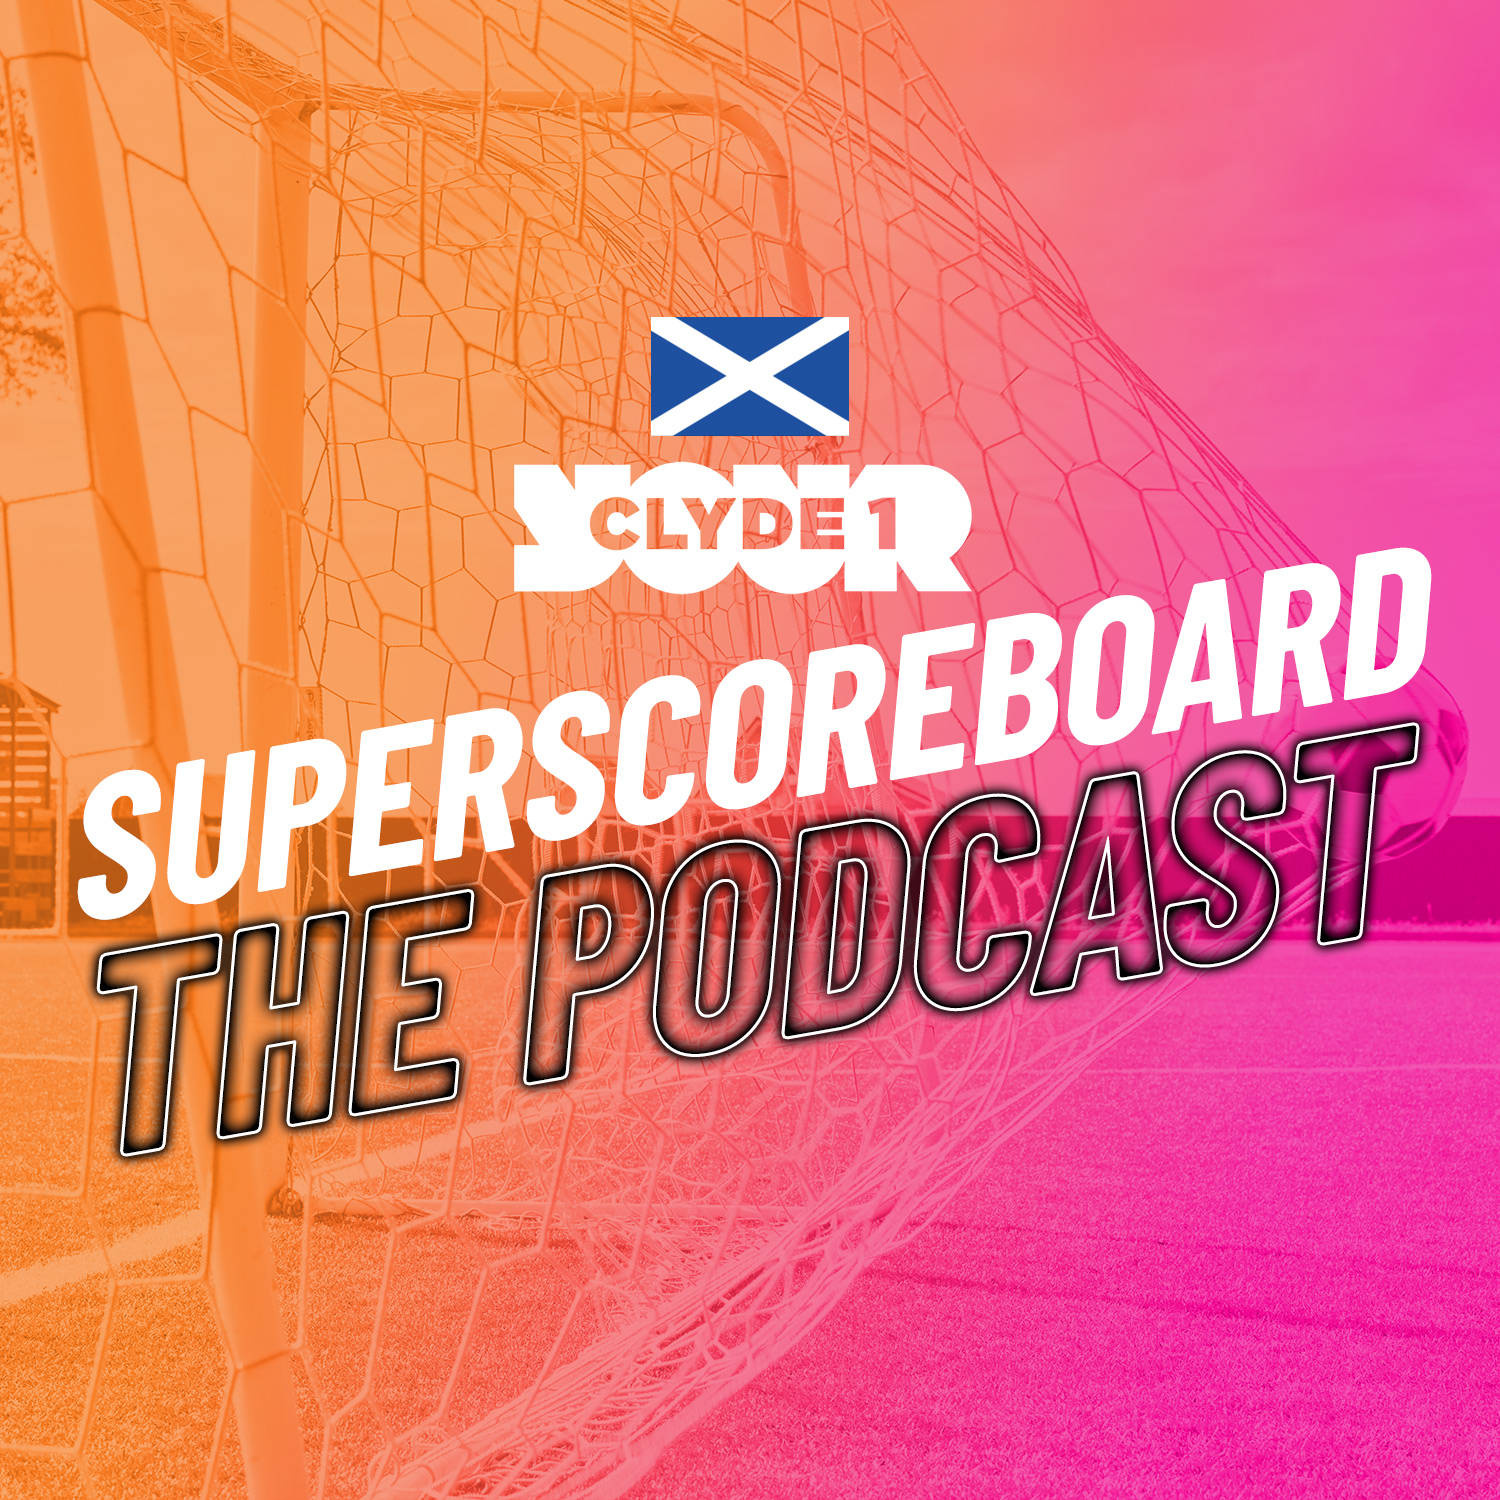 Thursday 30th November Clyde 1 Superscoreboard